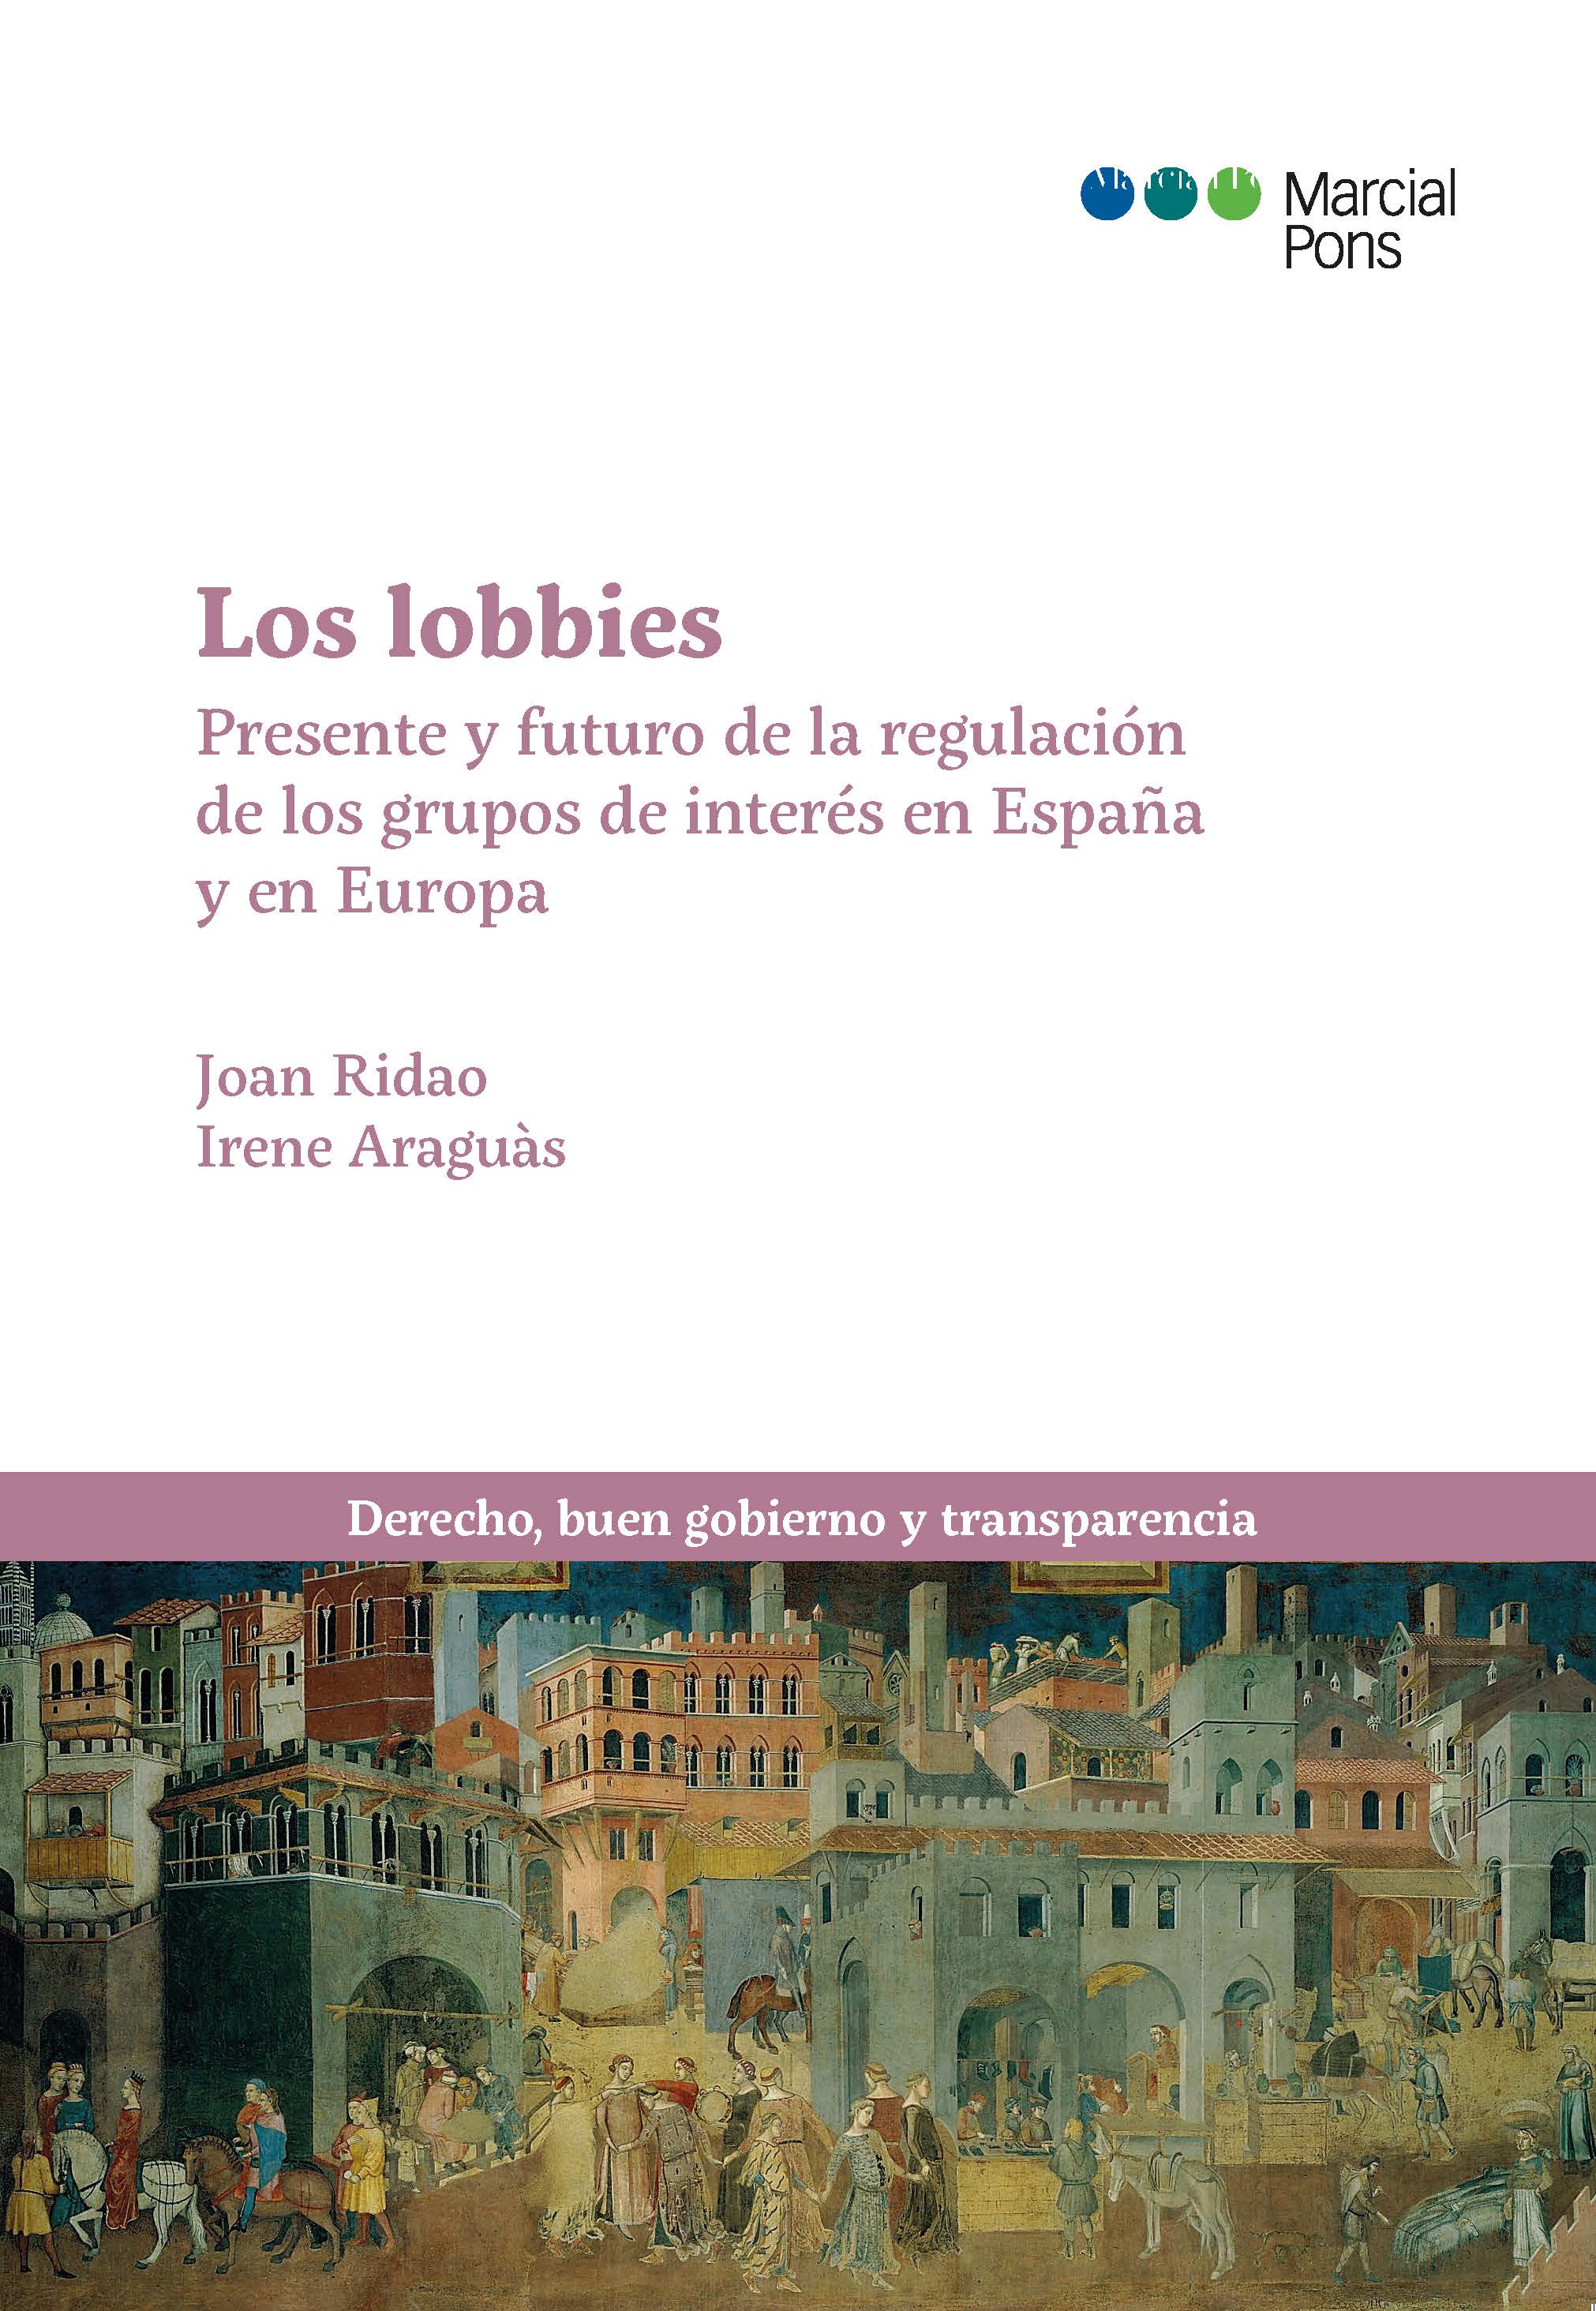 Los lobbies. Presente y futuro de la regulacin de los grupos de interes en Espaa y Europa